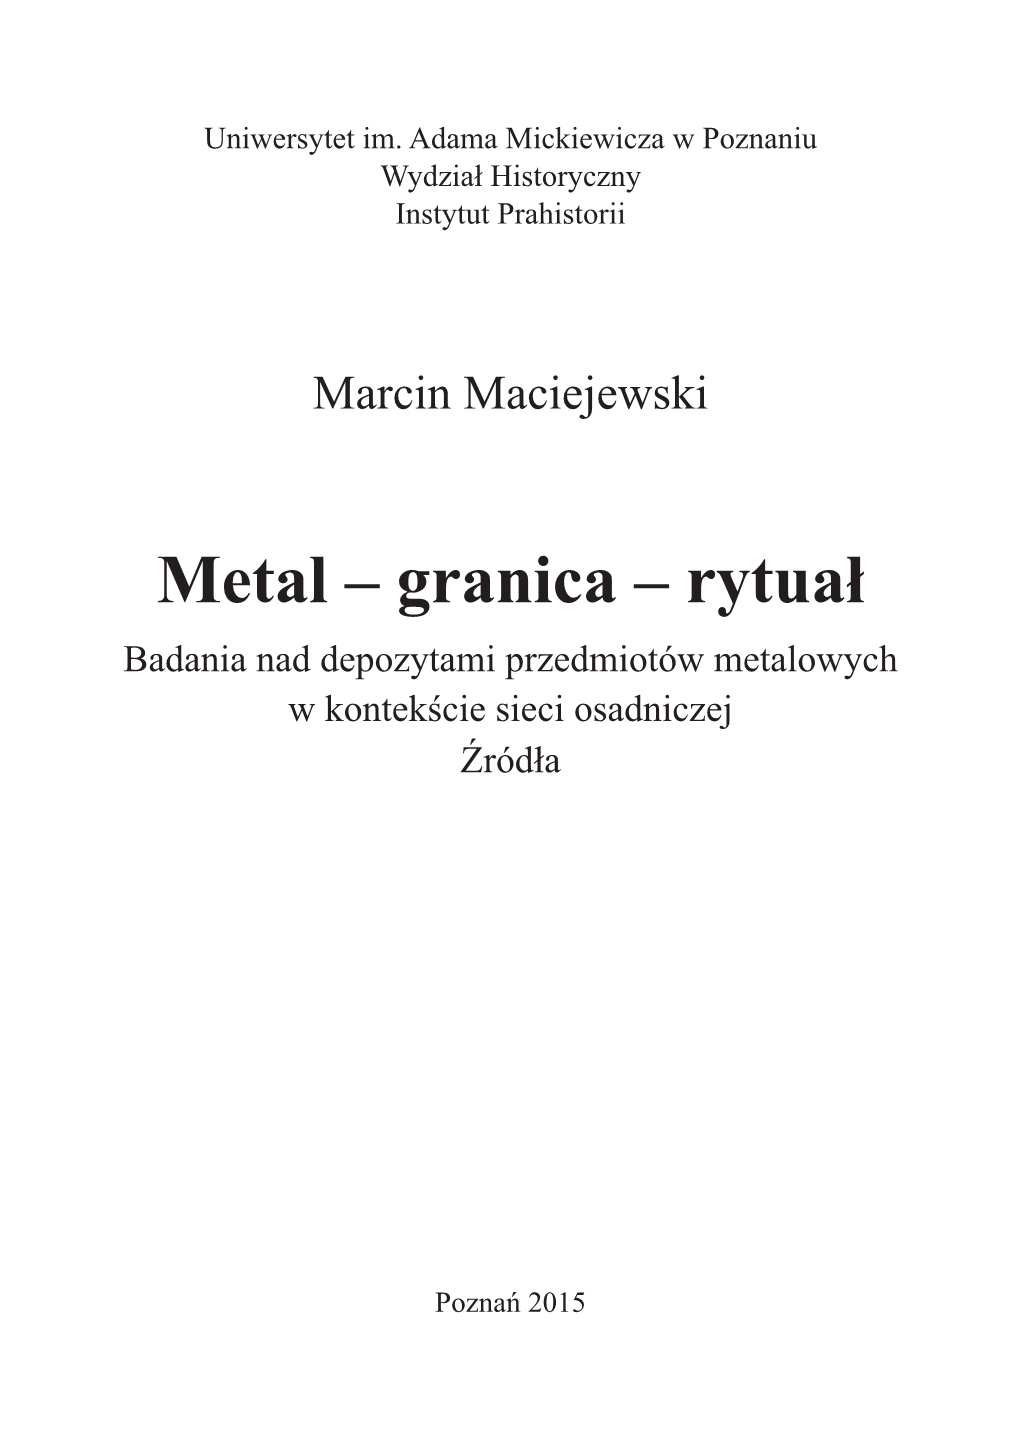 Metal – Granica – Rytuał Badania Nad Depozytami Przedmiotów Metalowych W Kontekście Sieci Osadniczej Źródła